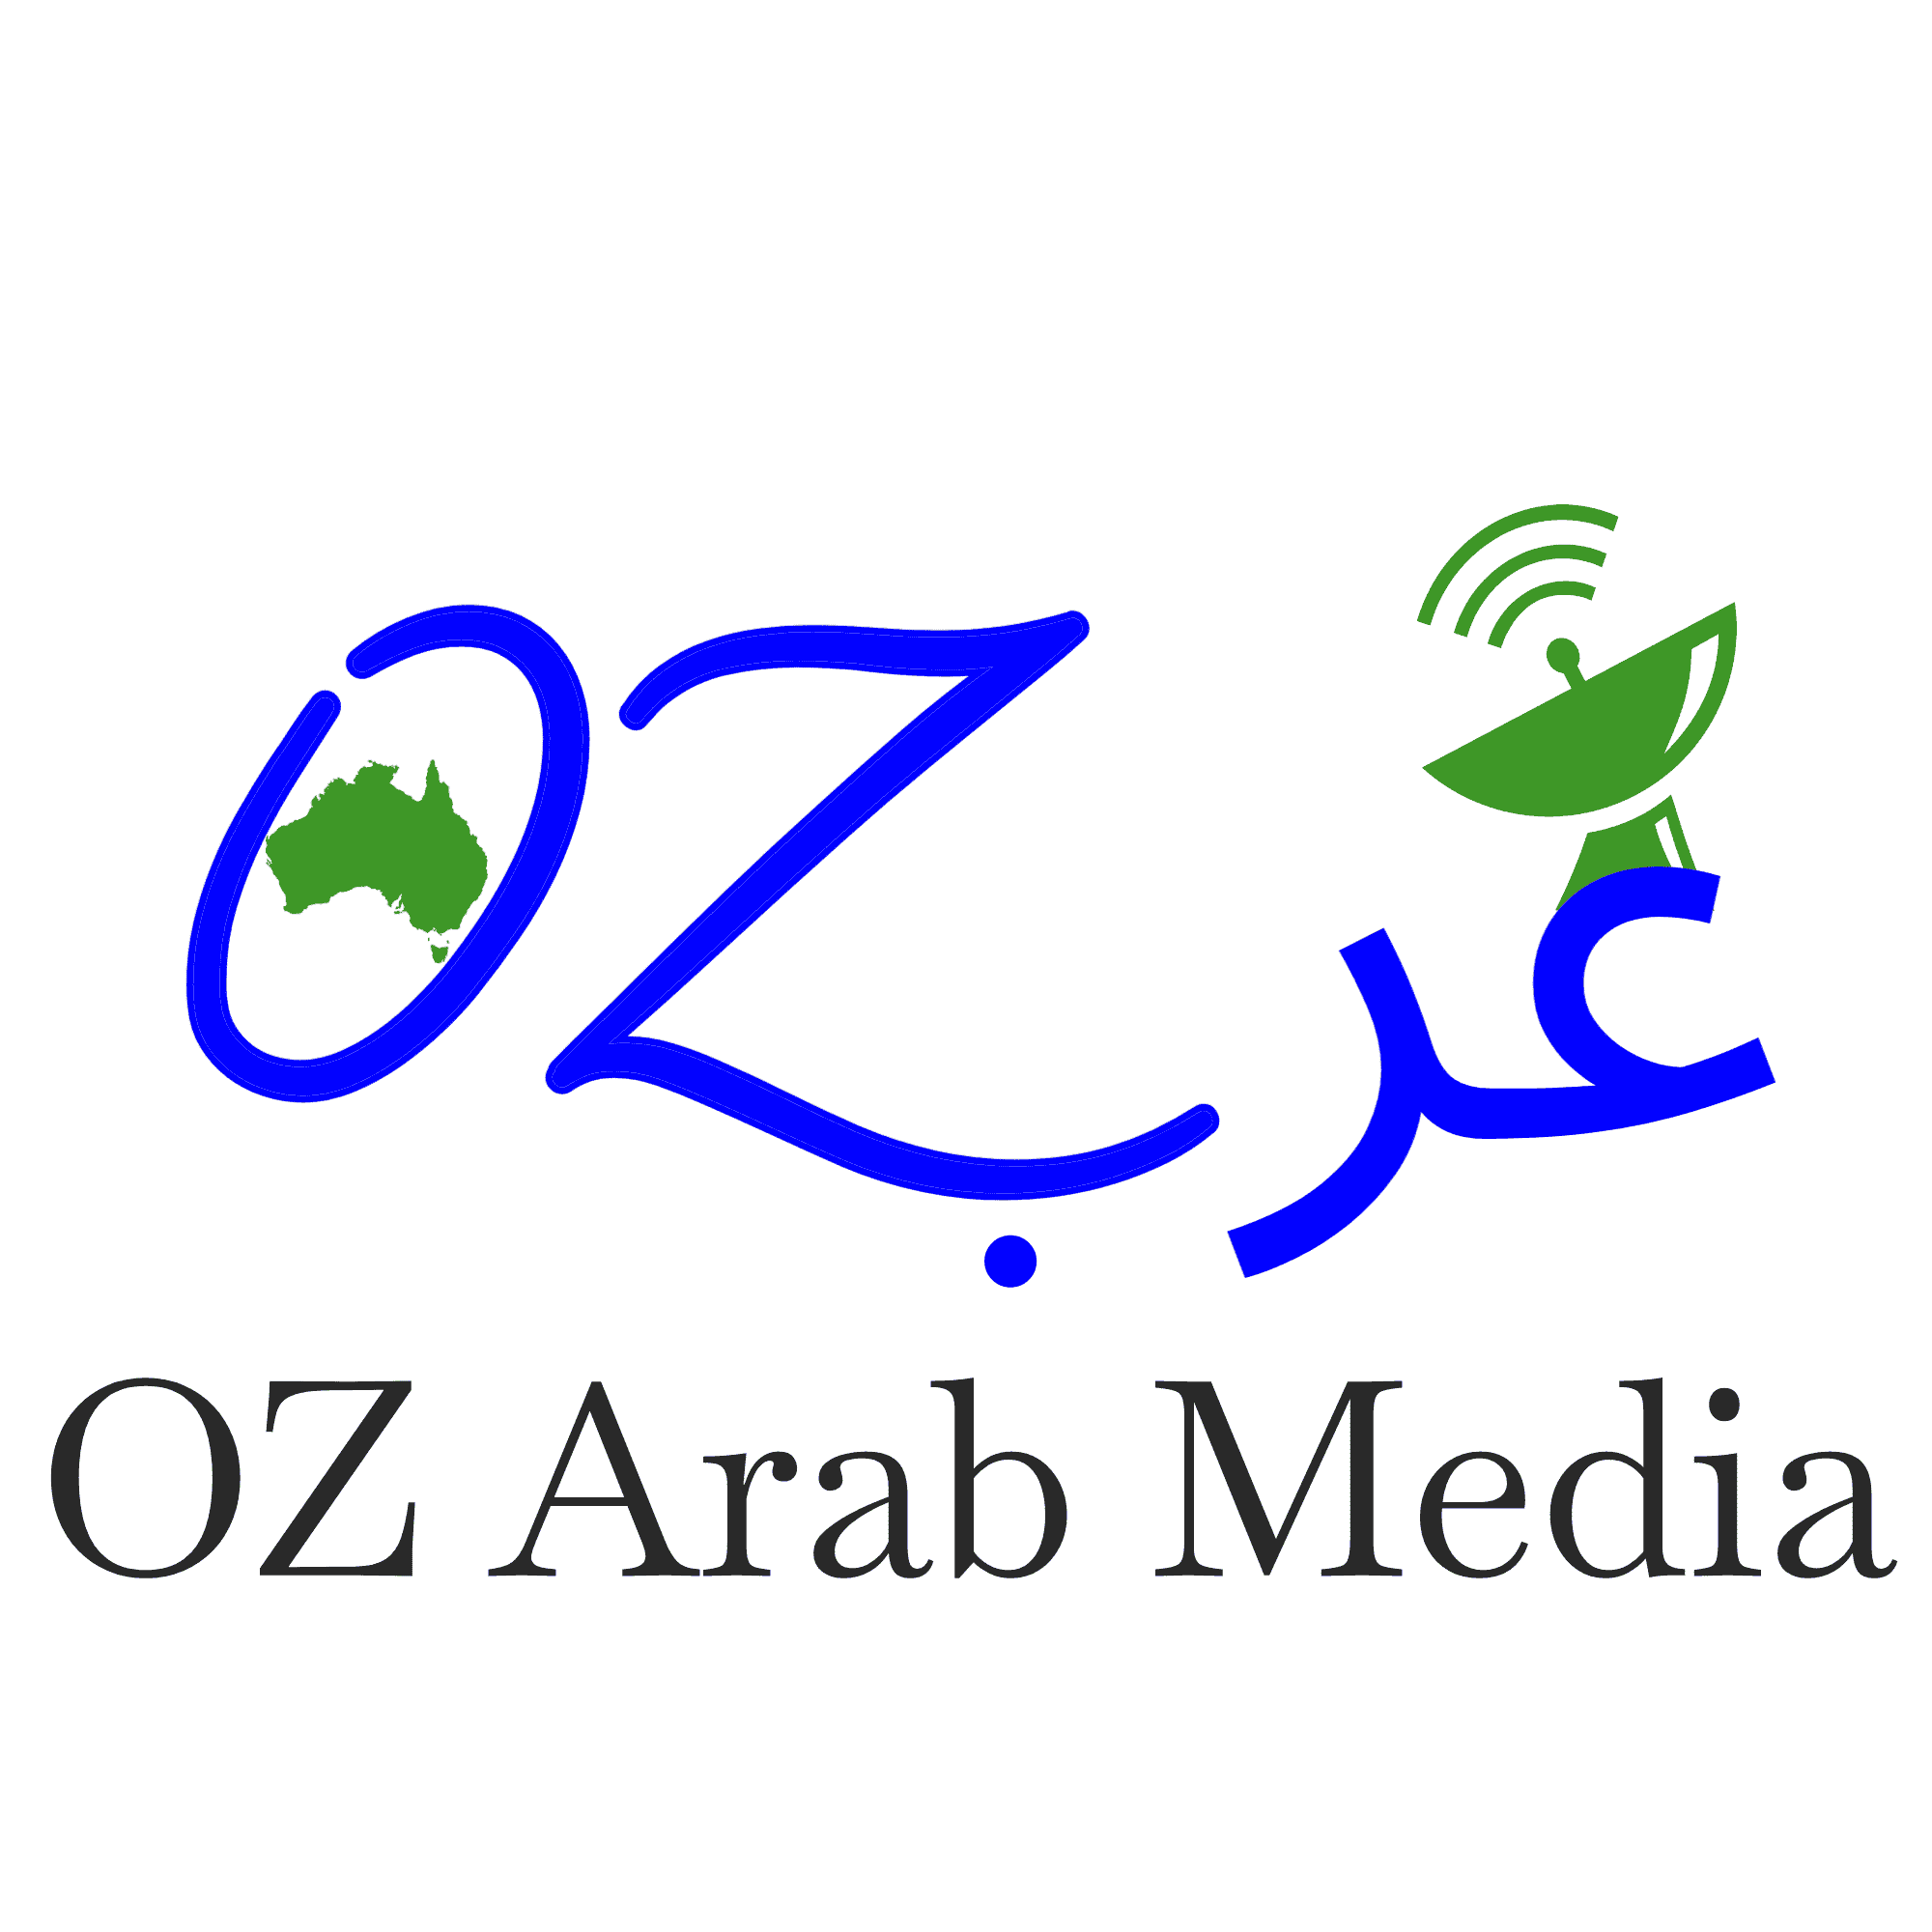 Contributors - OZ Arab Media